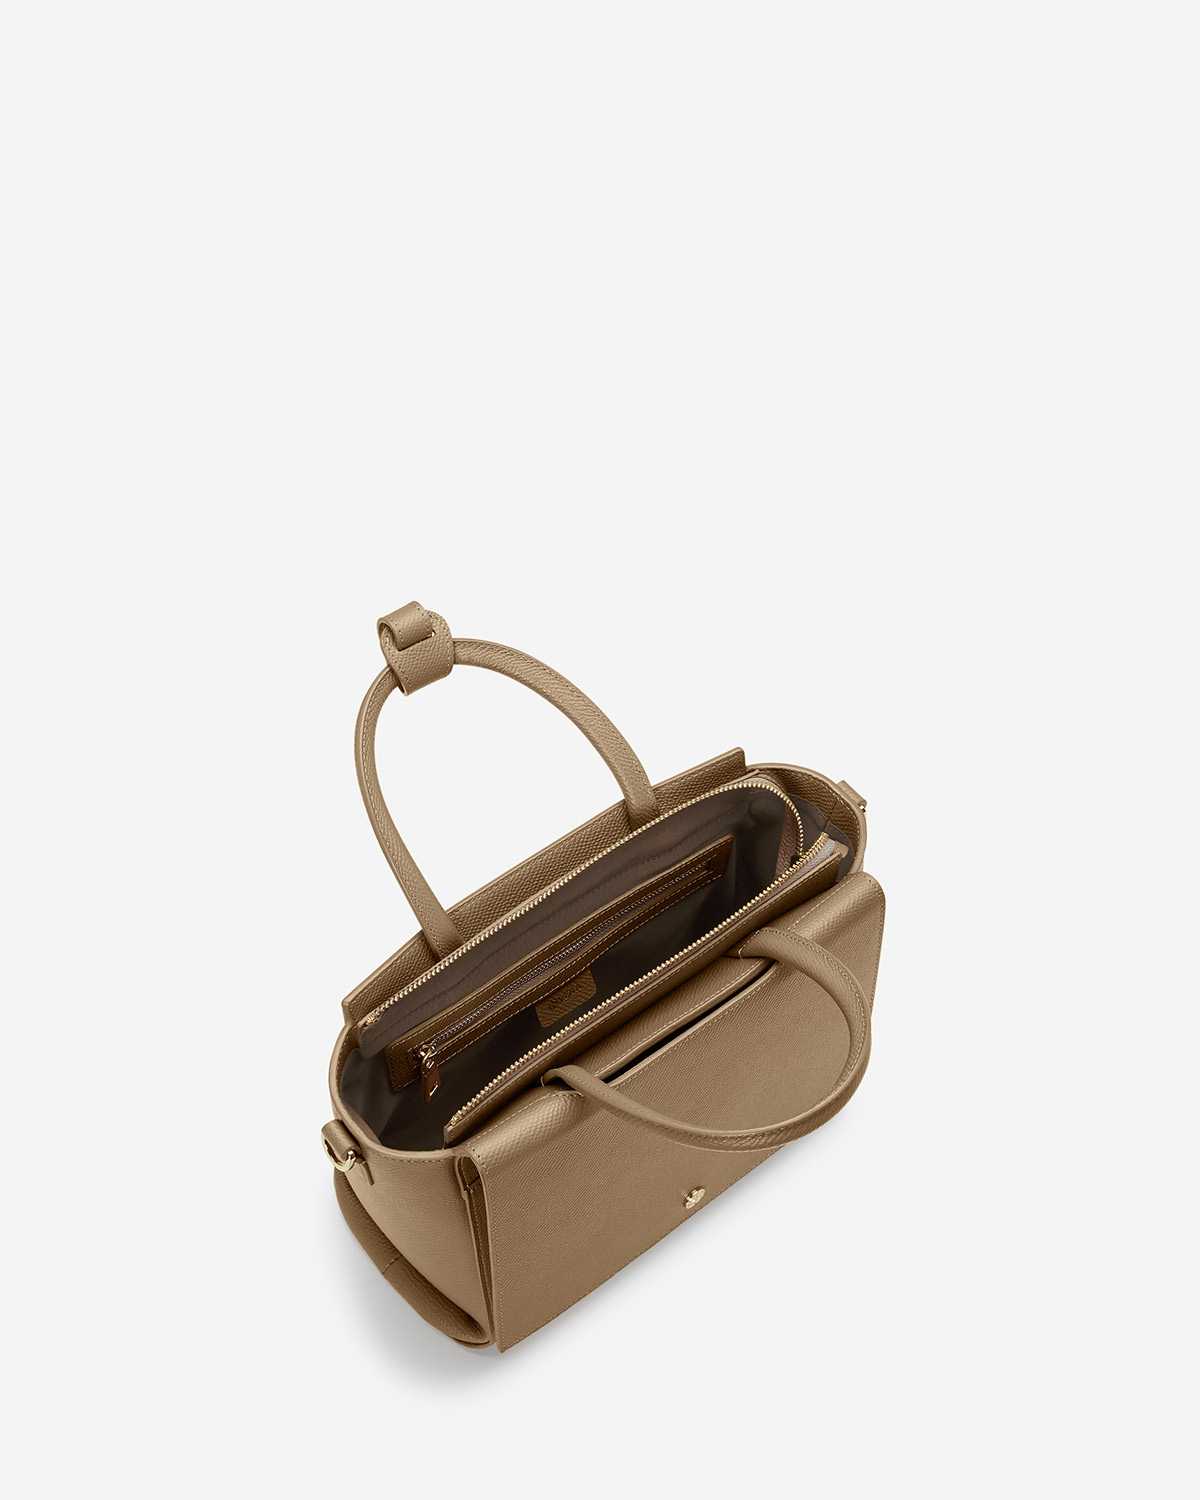 กระเป๋าถือหนังแท้ VERA Heidi Leather Handbag, ไซส์ 25 สี Martini Olive